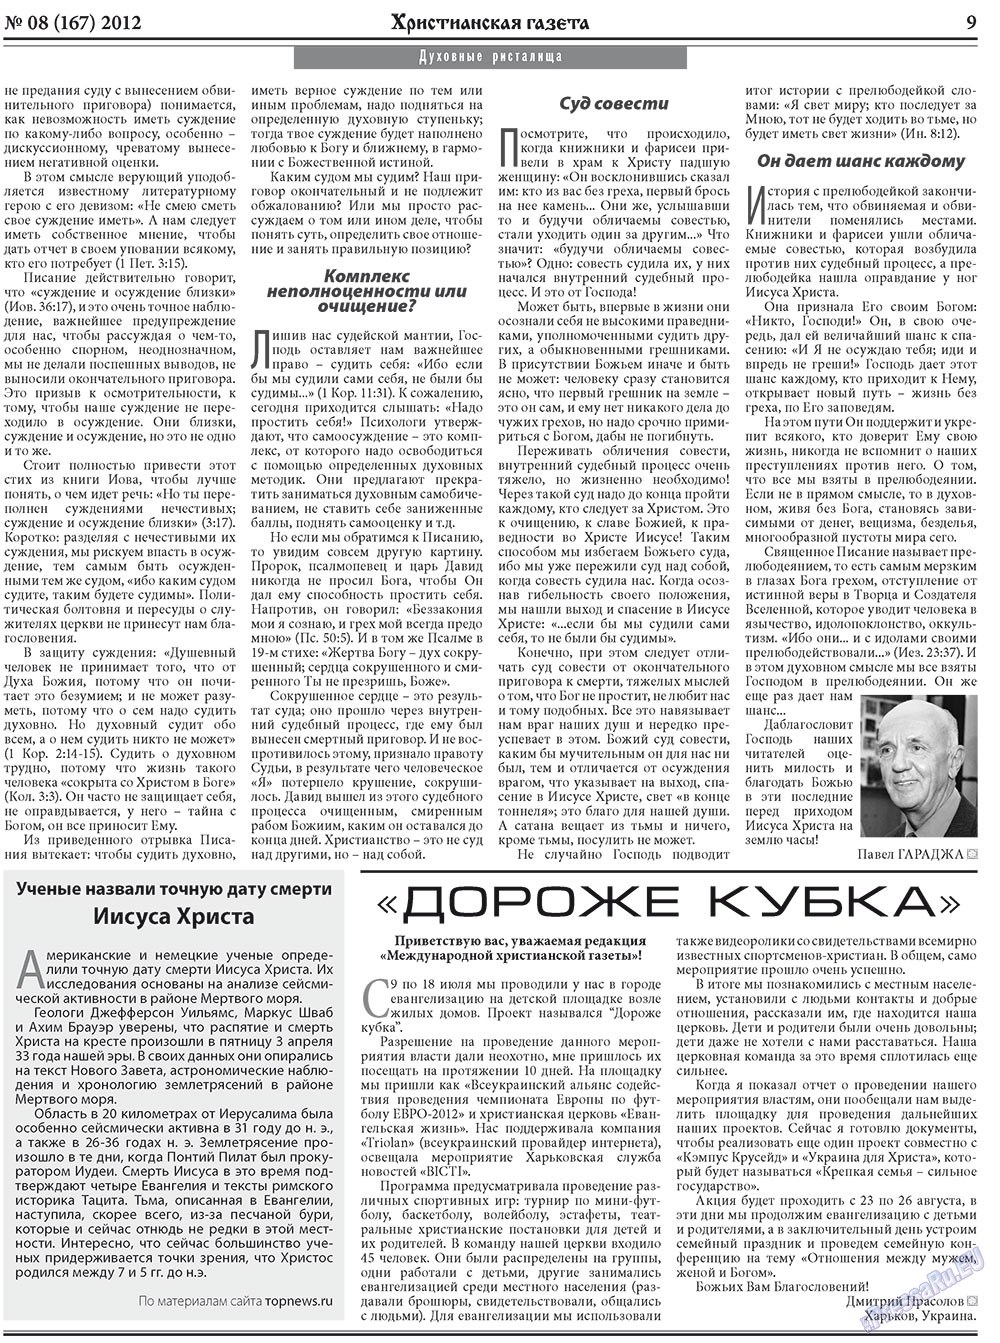 Христианская газета (газета). 2012 год, номер 8, стр. 9